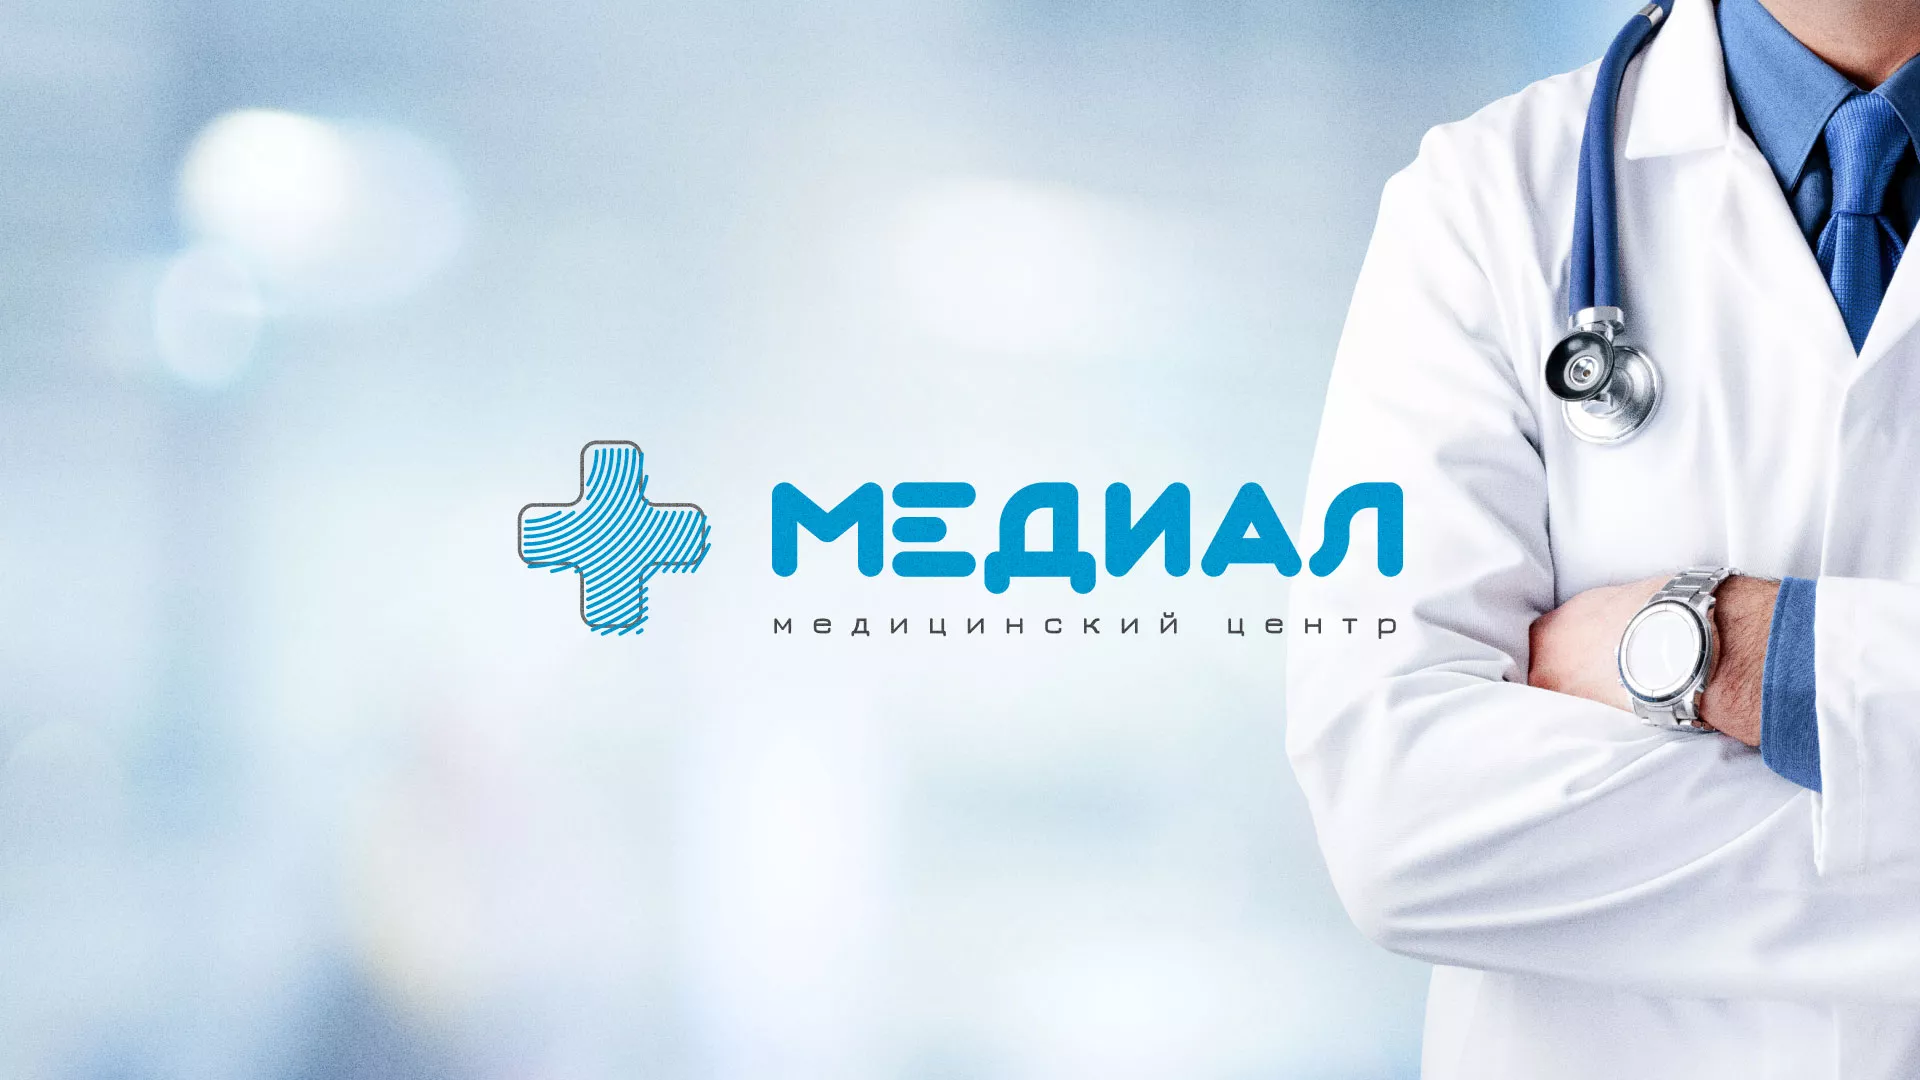 Создание сайта для медицинского центра «Медиал» в Урюпинске